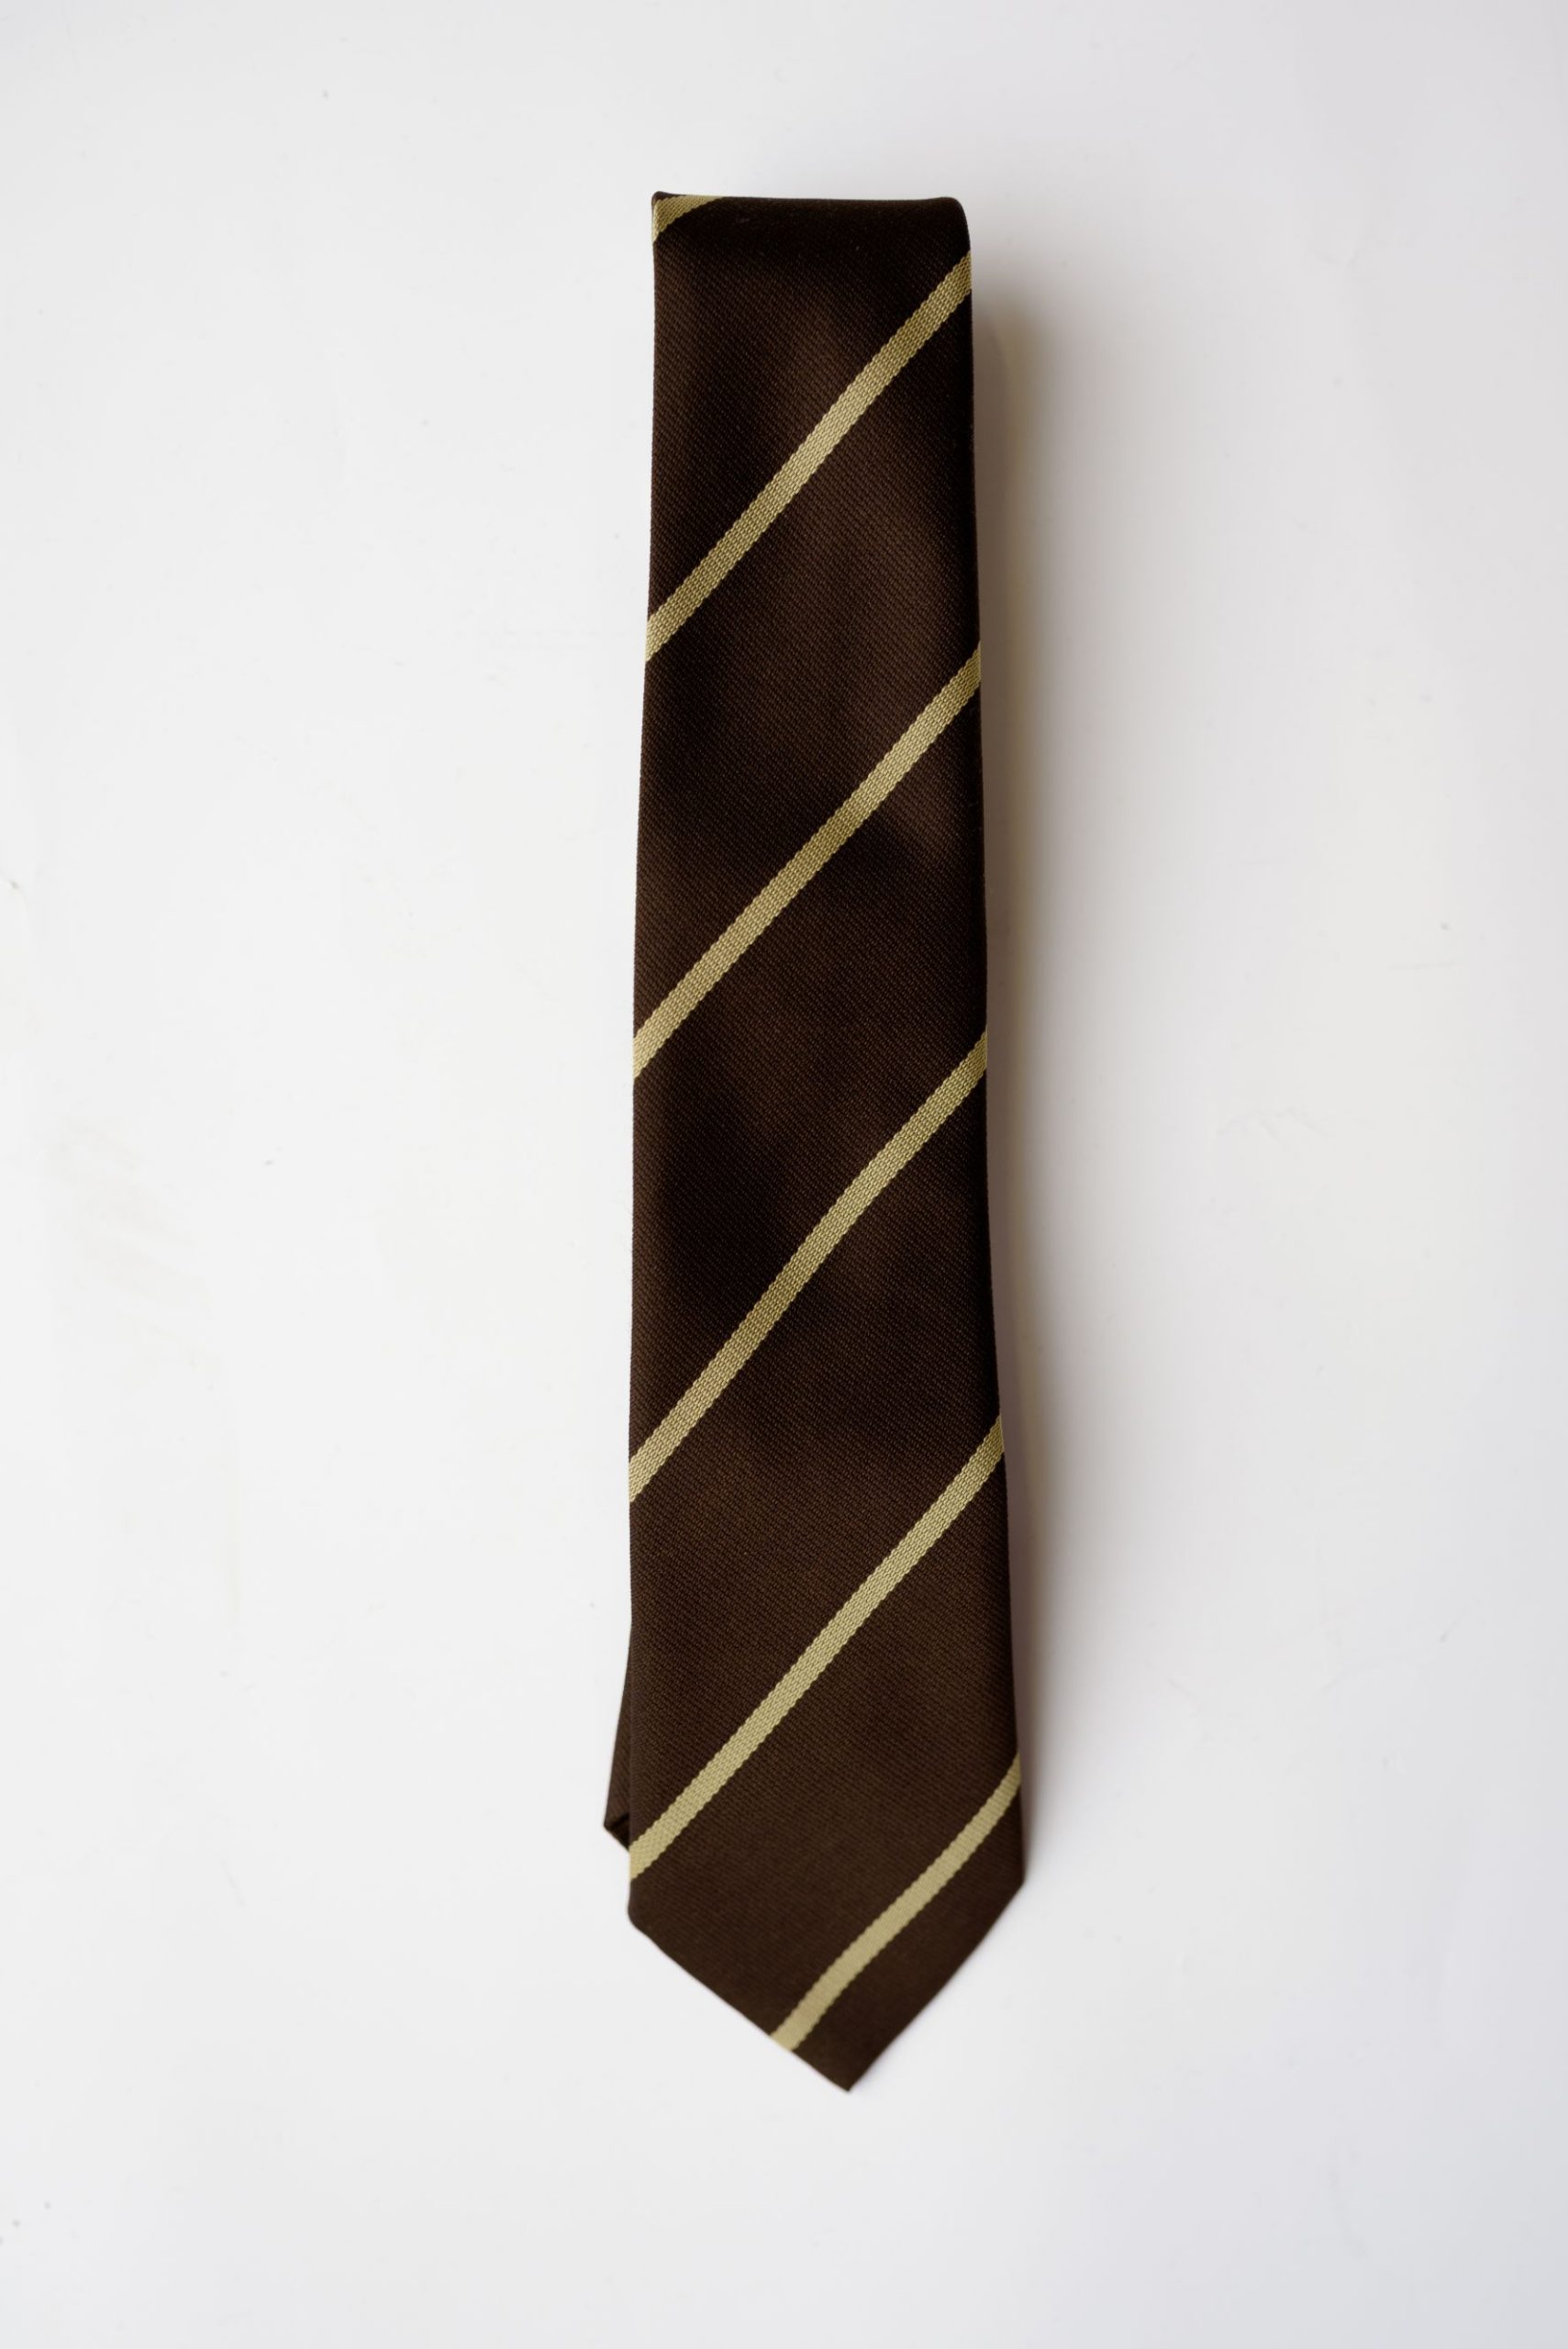 Grange Primary school tie